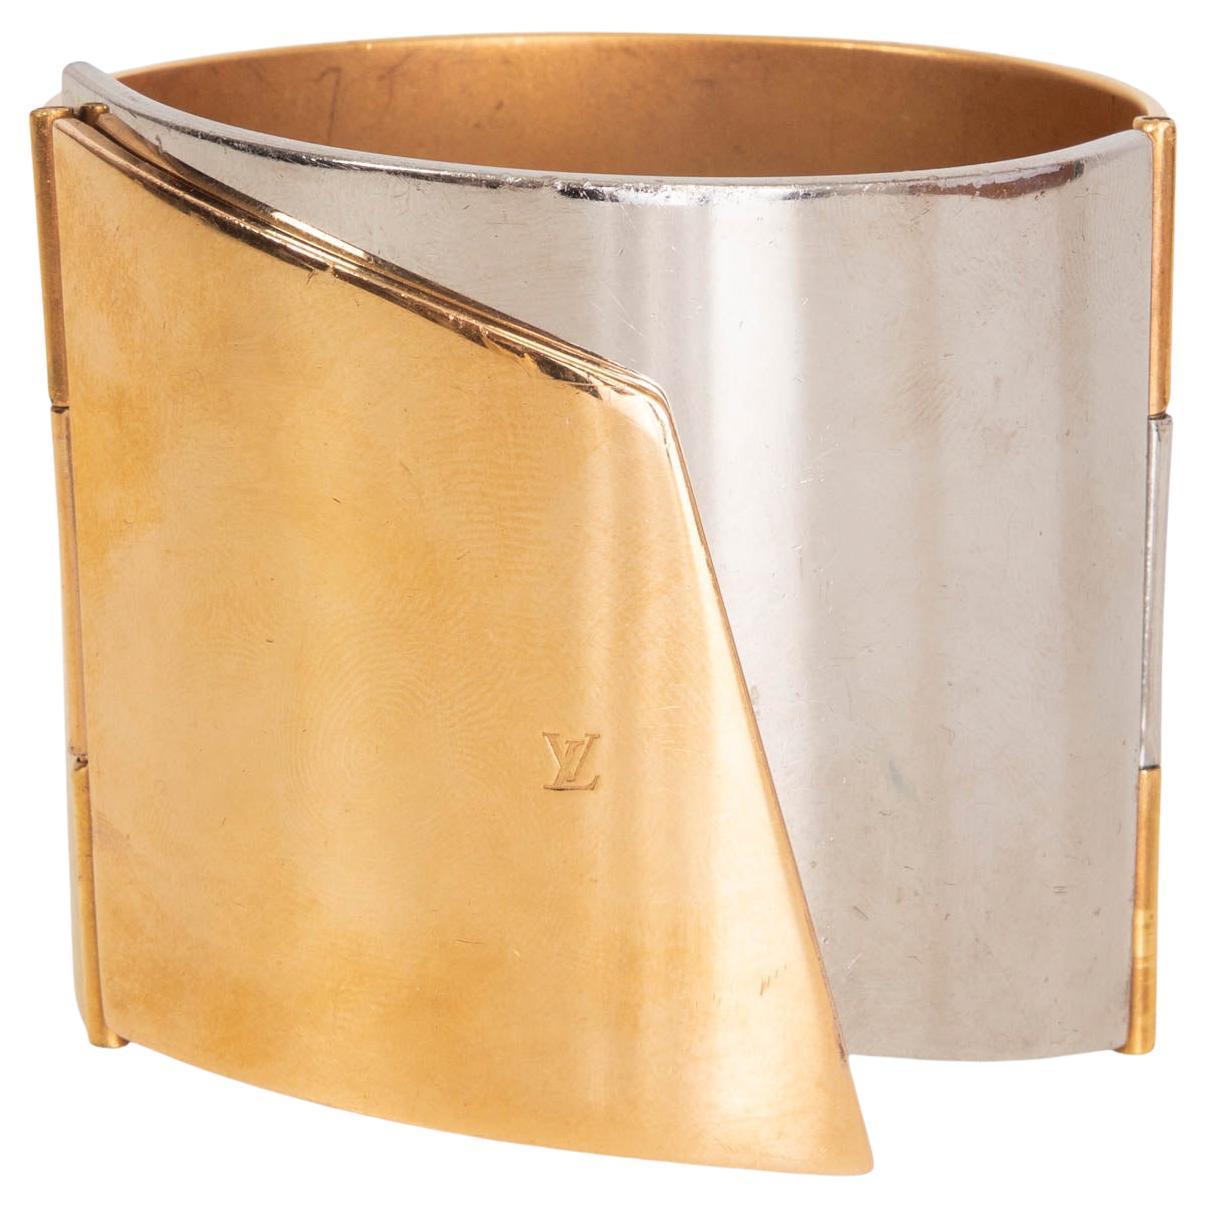 Louis Vuitton Vernis Save It Bracelet - Gold-Tone Metal Cuff